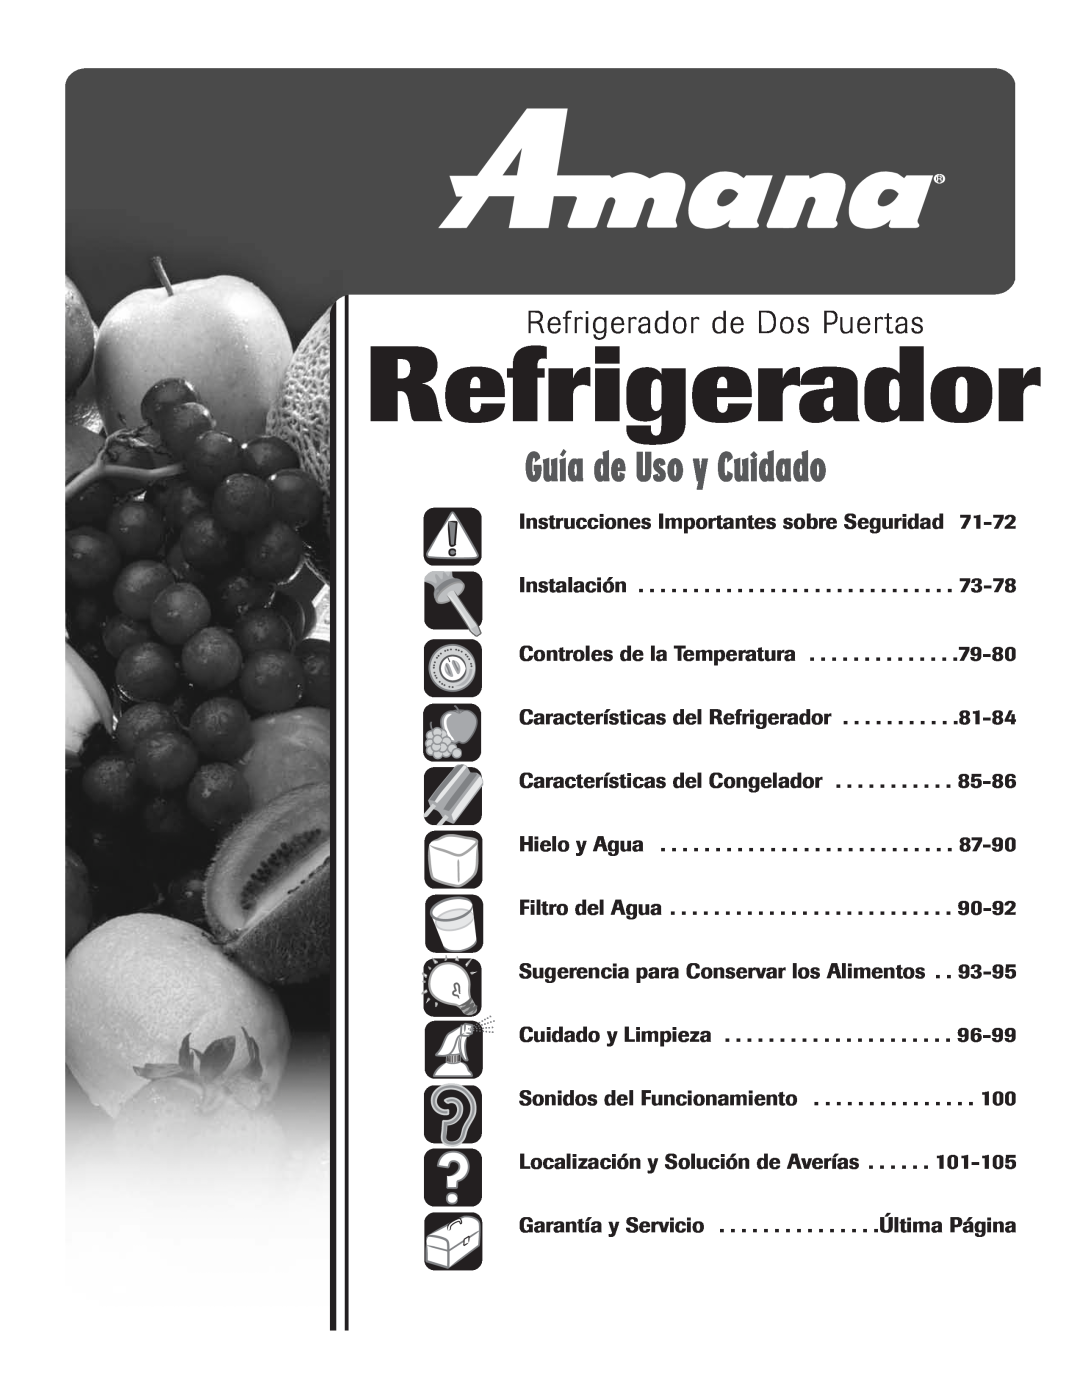 Amana ASD2624HEQ important safety instructions Refrigerador de Dos Puertas, Guía de Uso y Cuidado 